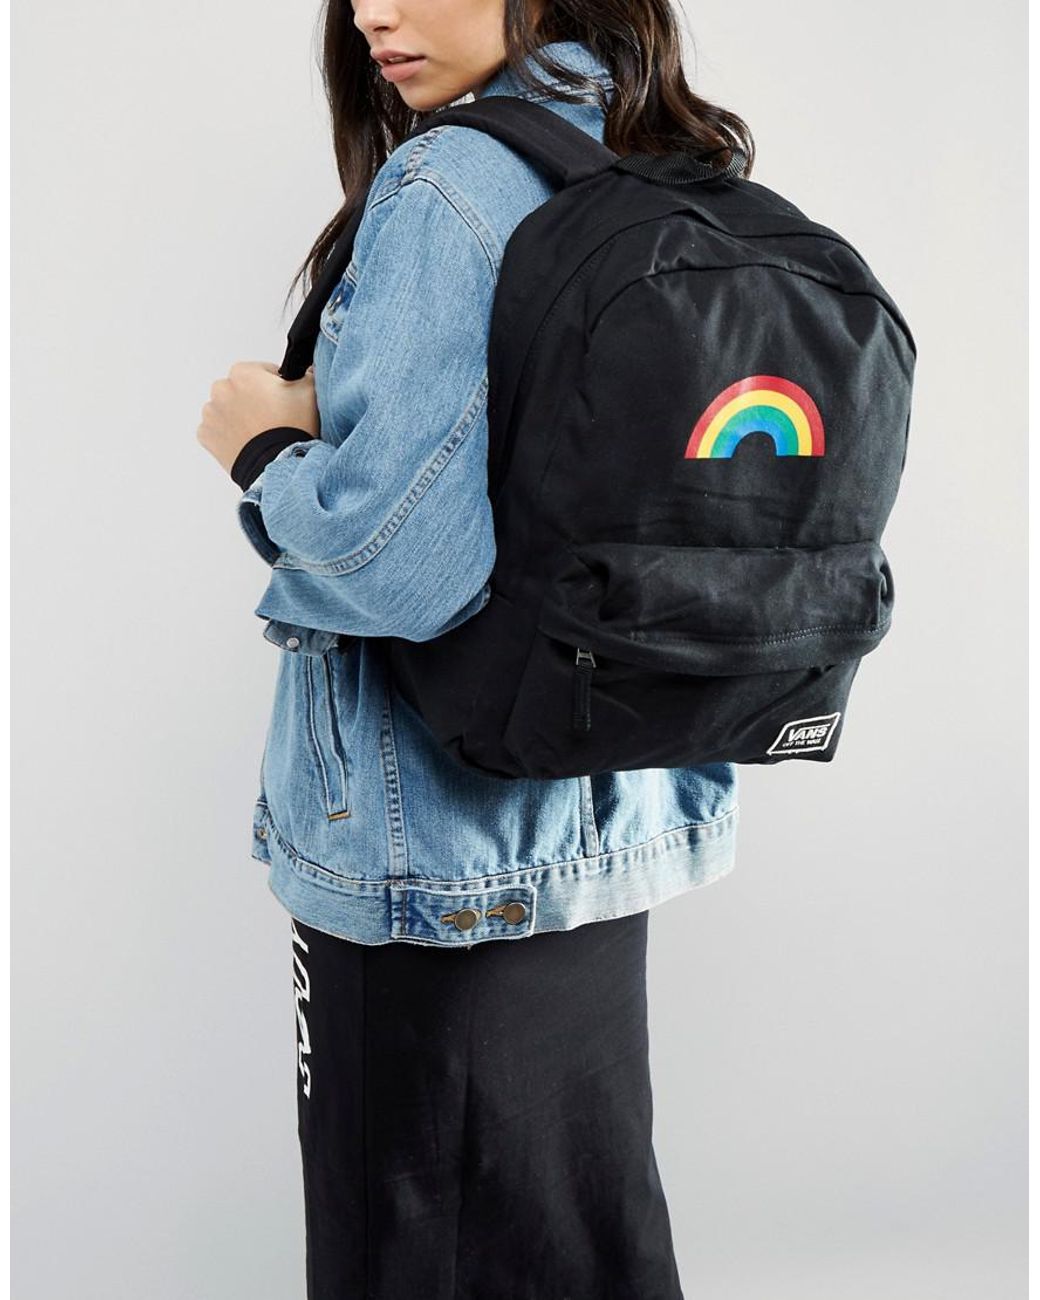 Vans Rainbow Backpack In Black | Lyst Australia